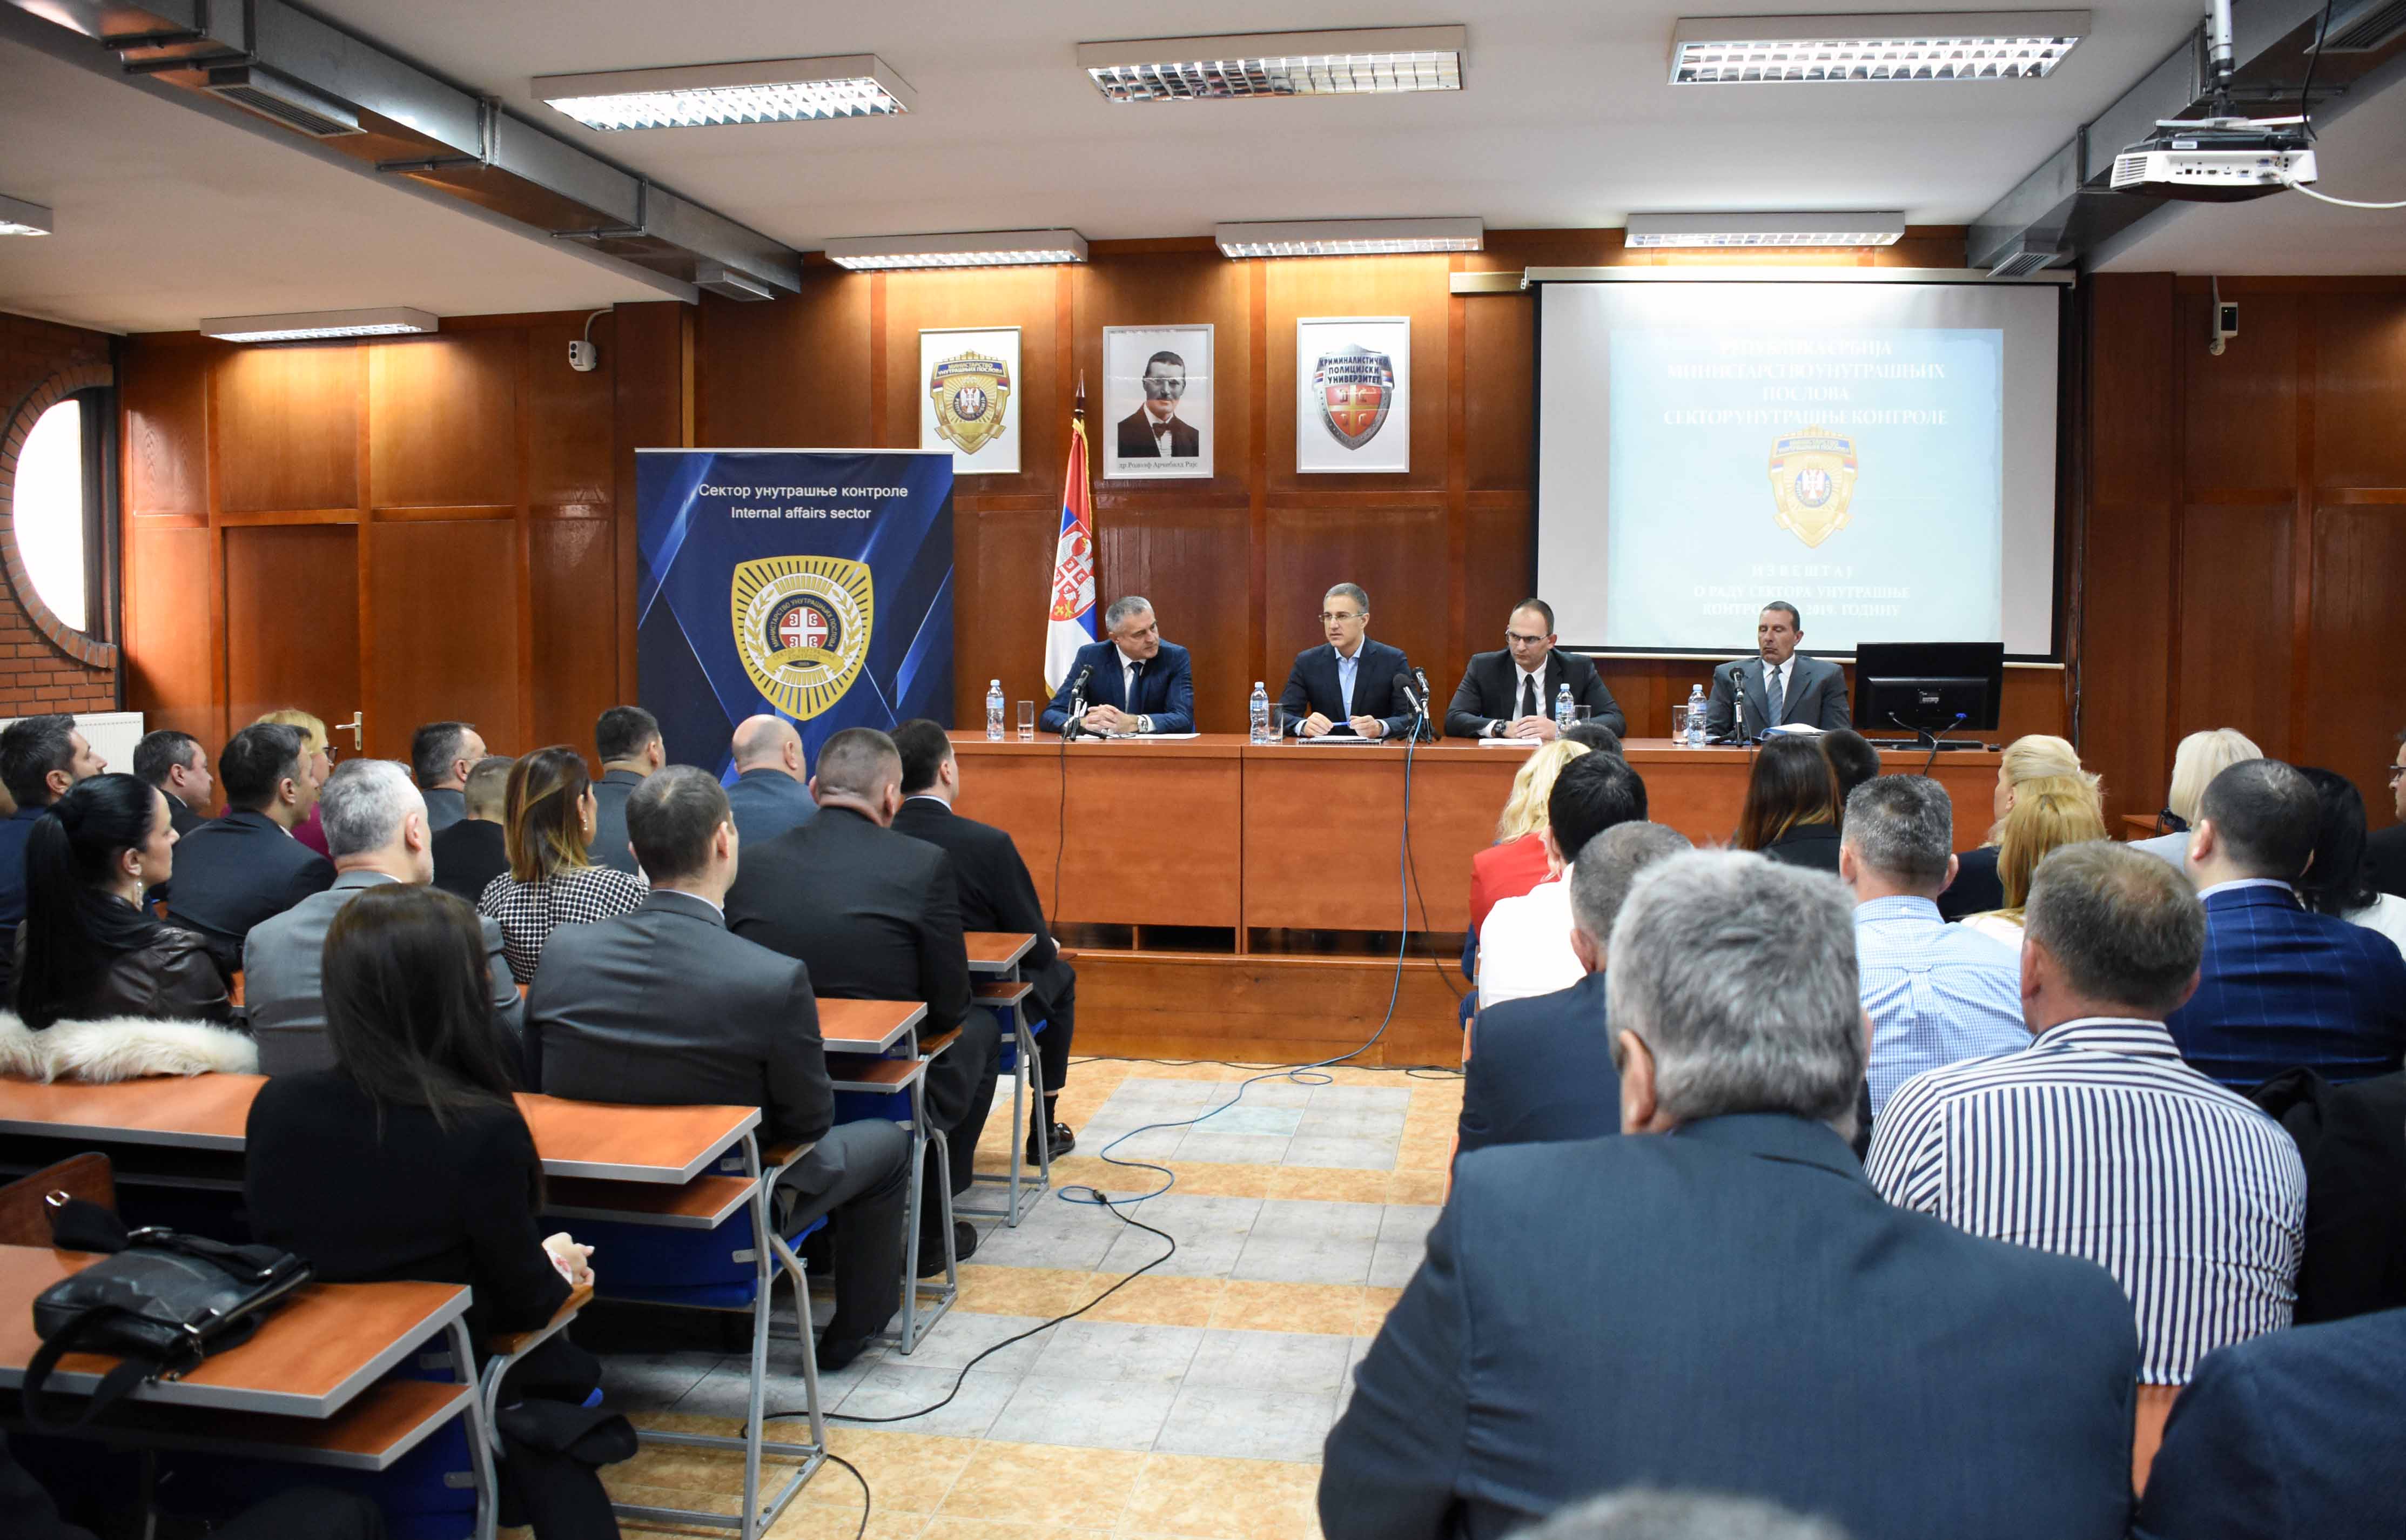 Ministar Stefanović se zahvalio pripadnicima Sektora unutrašnje kontrole na predanom radu